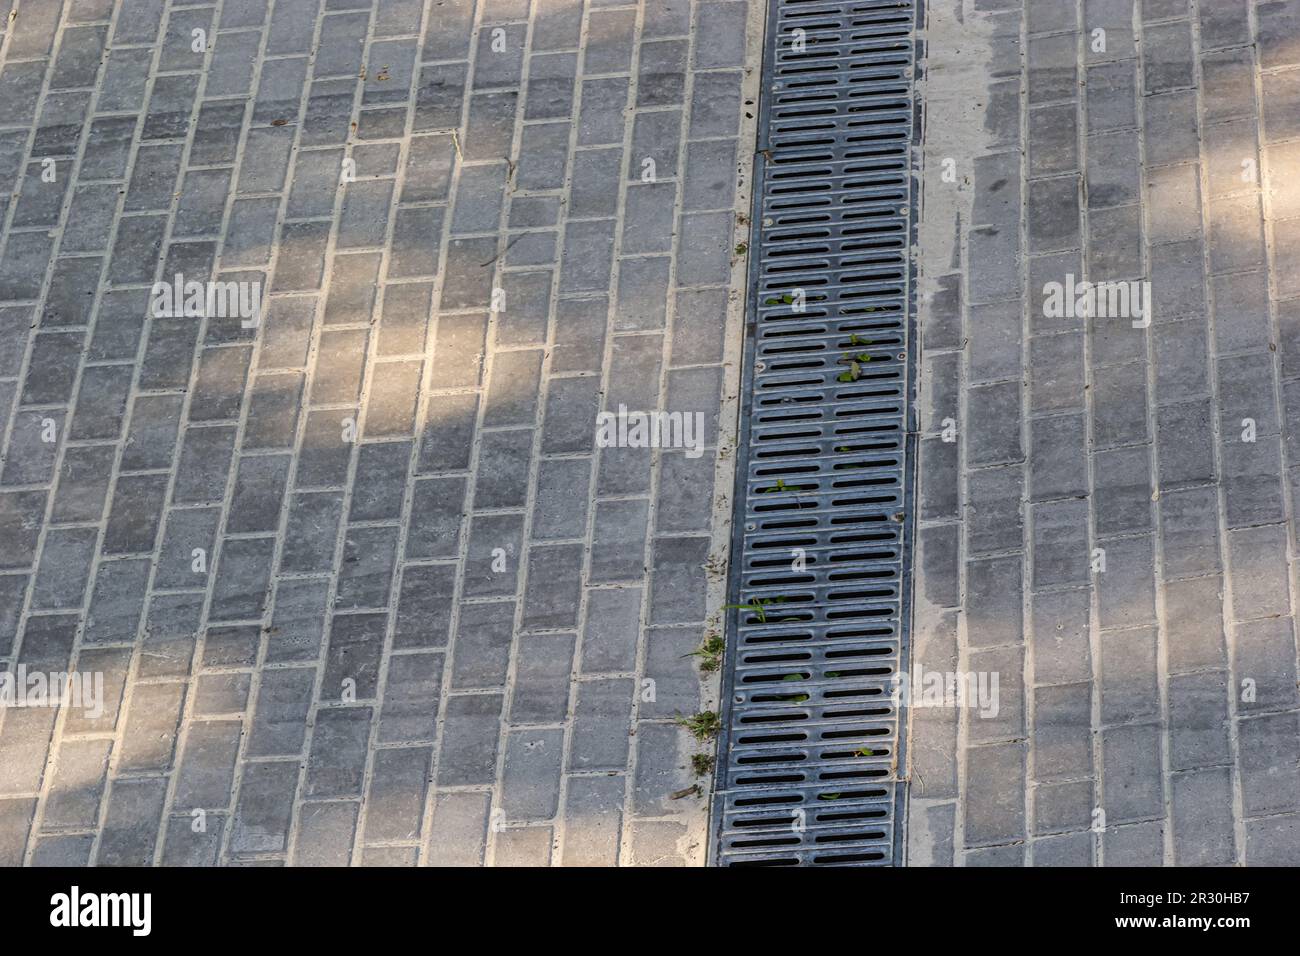 Ein Gitter eines Drainage-Pflastersystems auf einem Fußweg aus quadratischen Steinfliesen, Nahaufnahme eines Regenwasser-Entwässerungssystems. Stockfoto